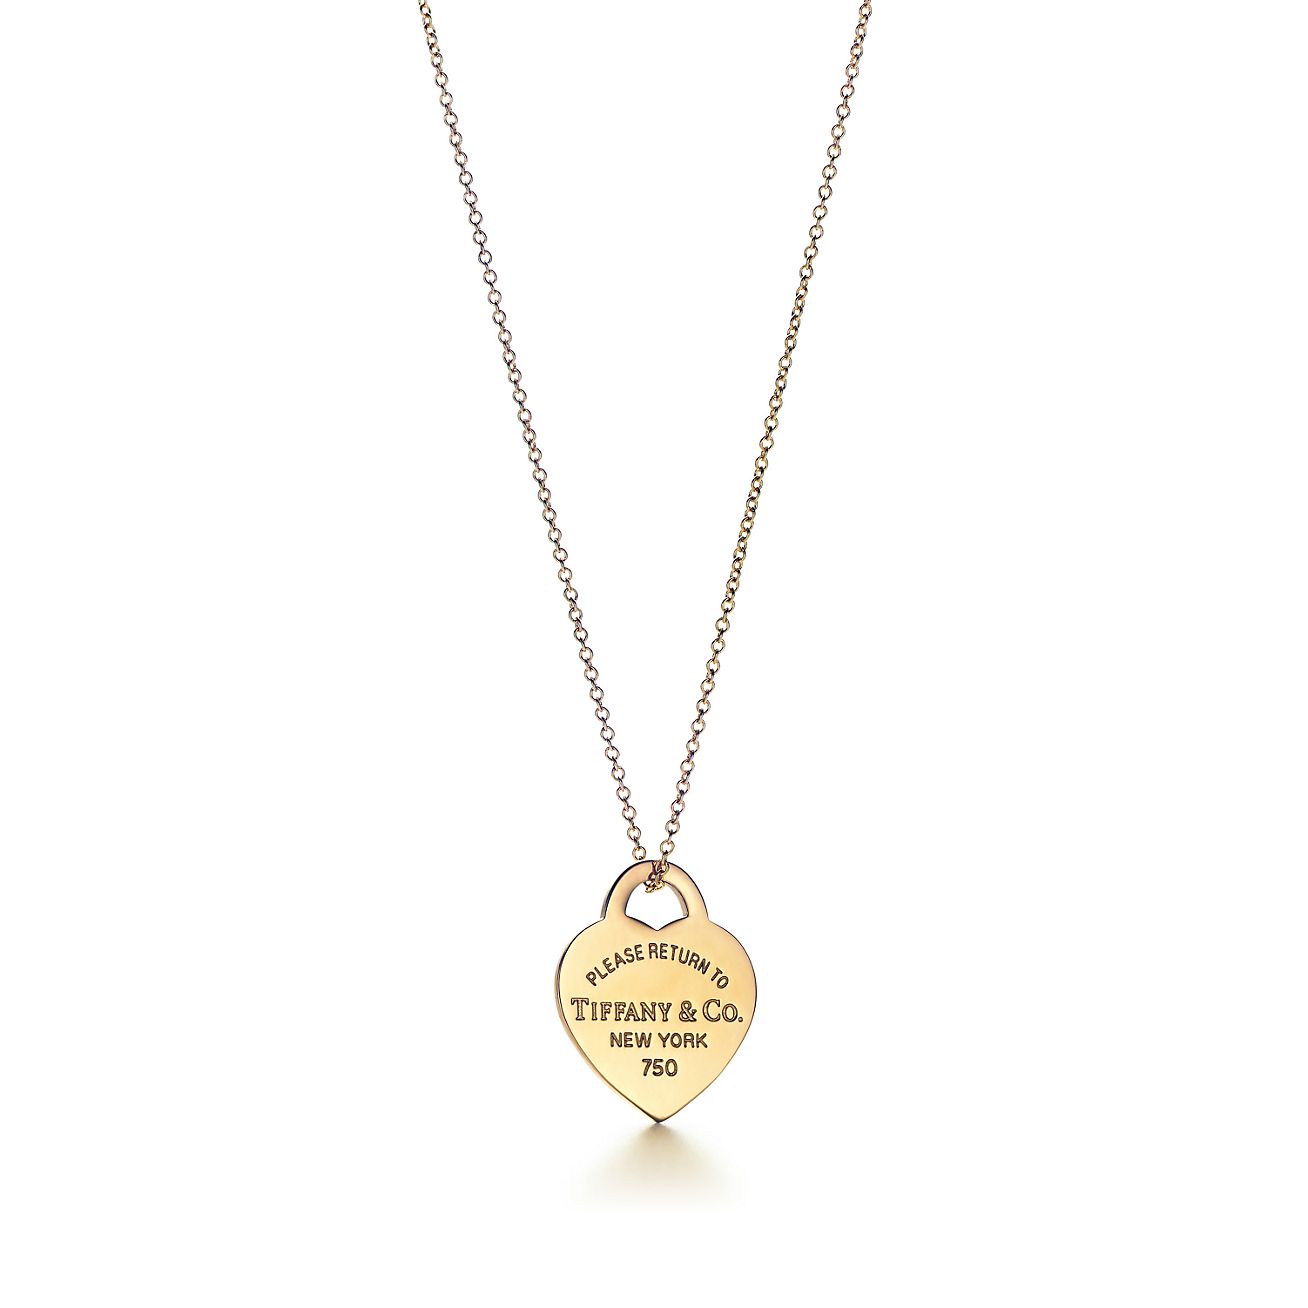 tiffany co necklace heart tag